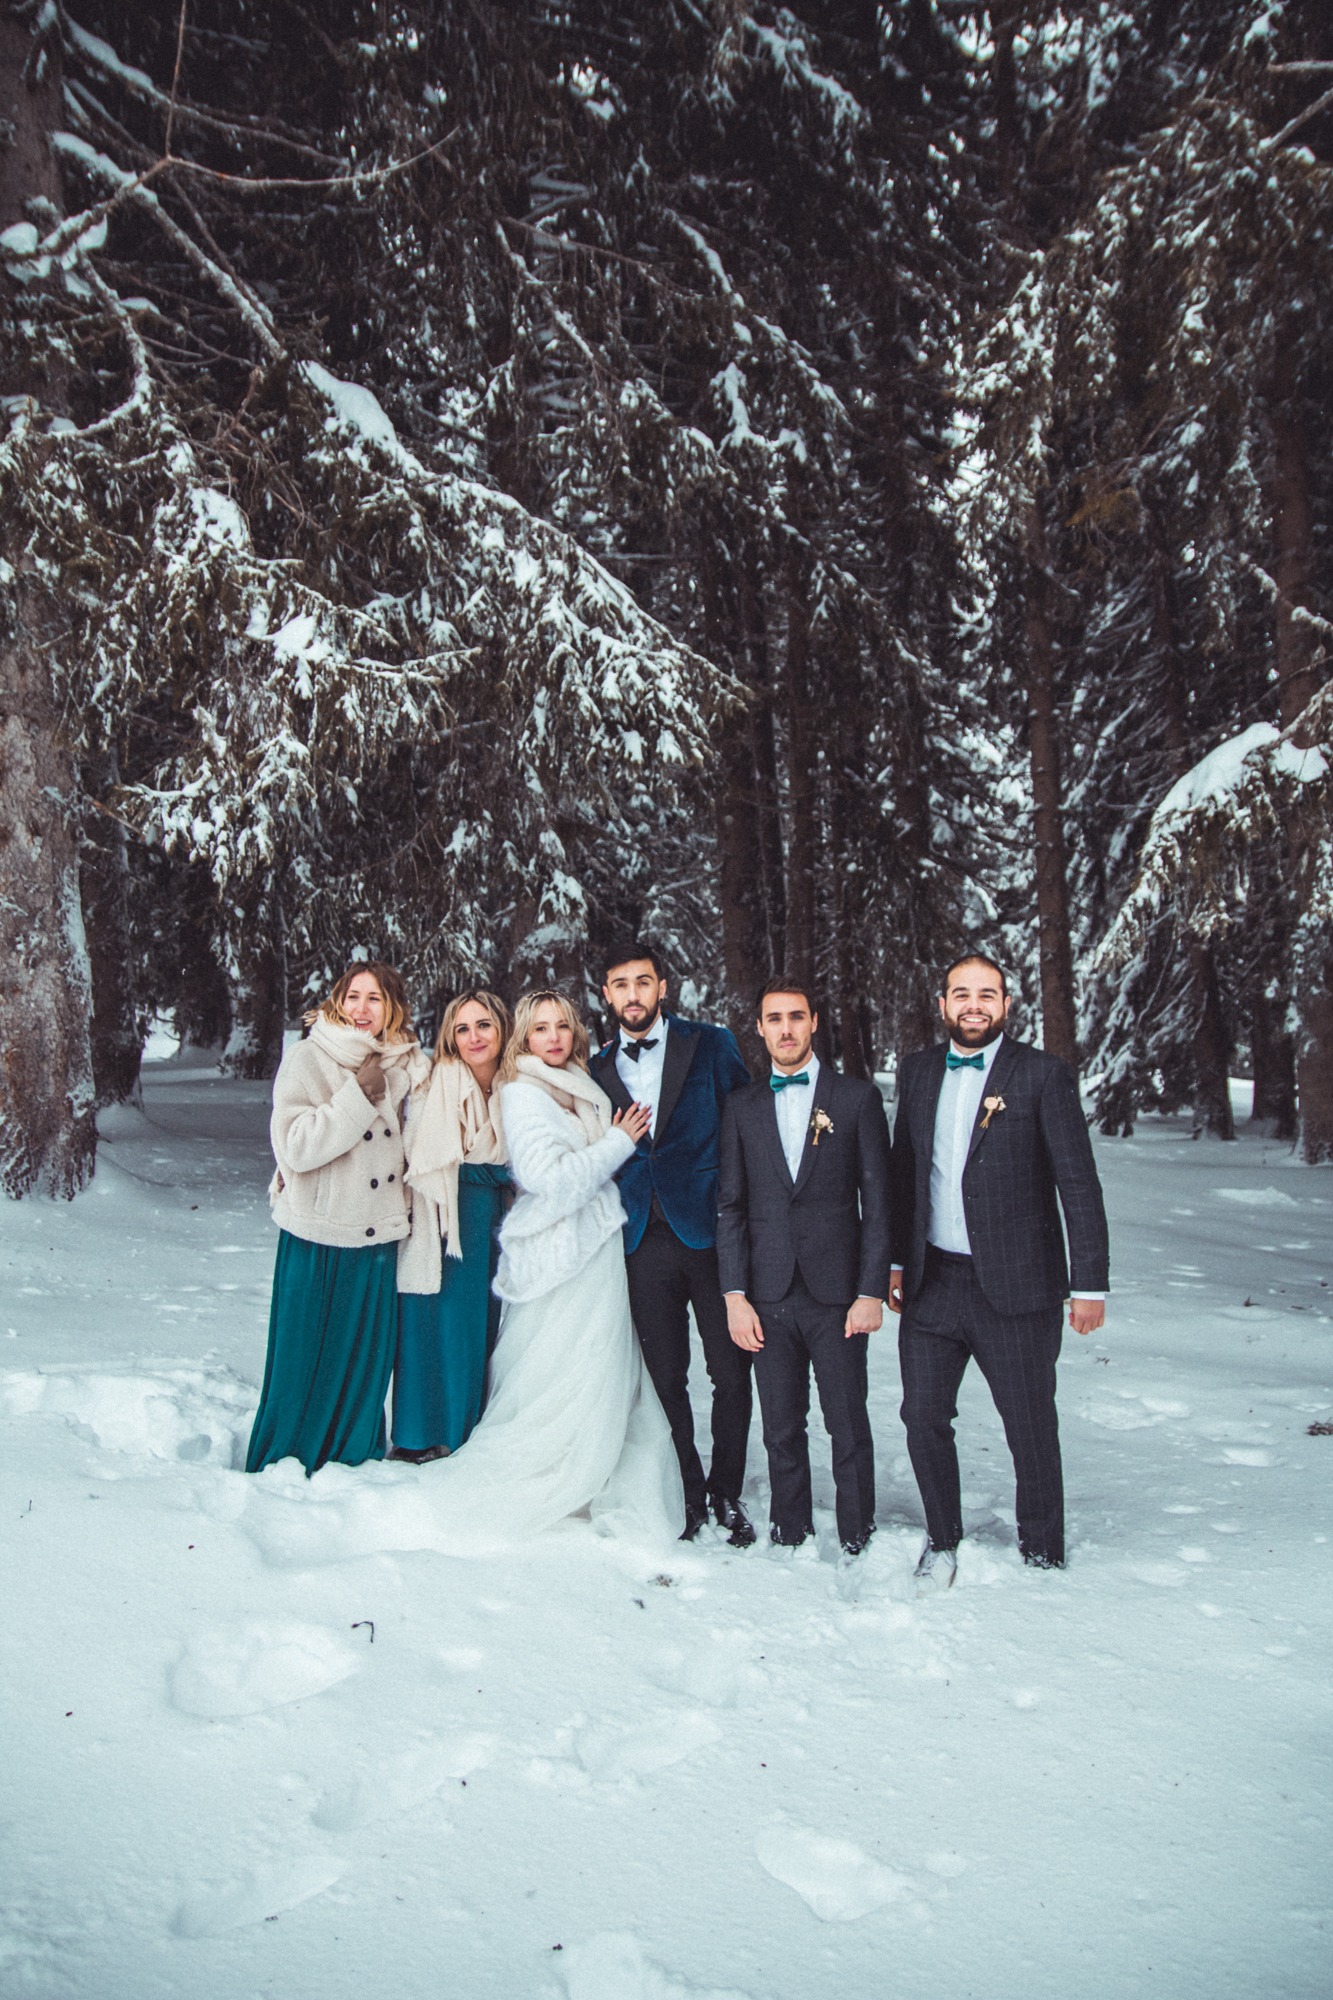 Mariage d'hiver : fugue amoureuse à la neige - les moments m - wedding planner lyon